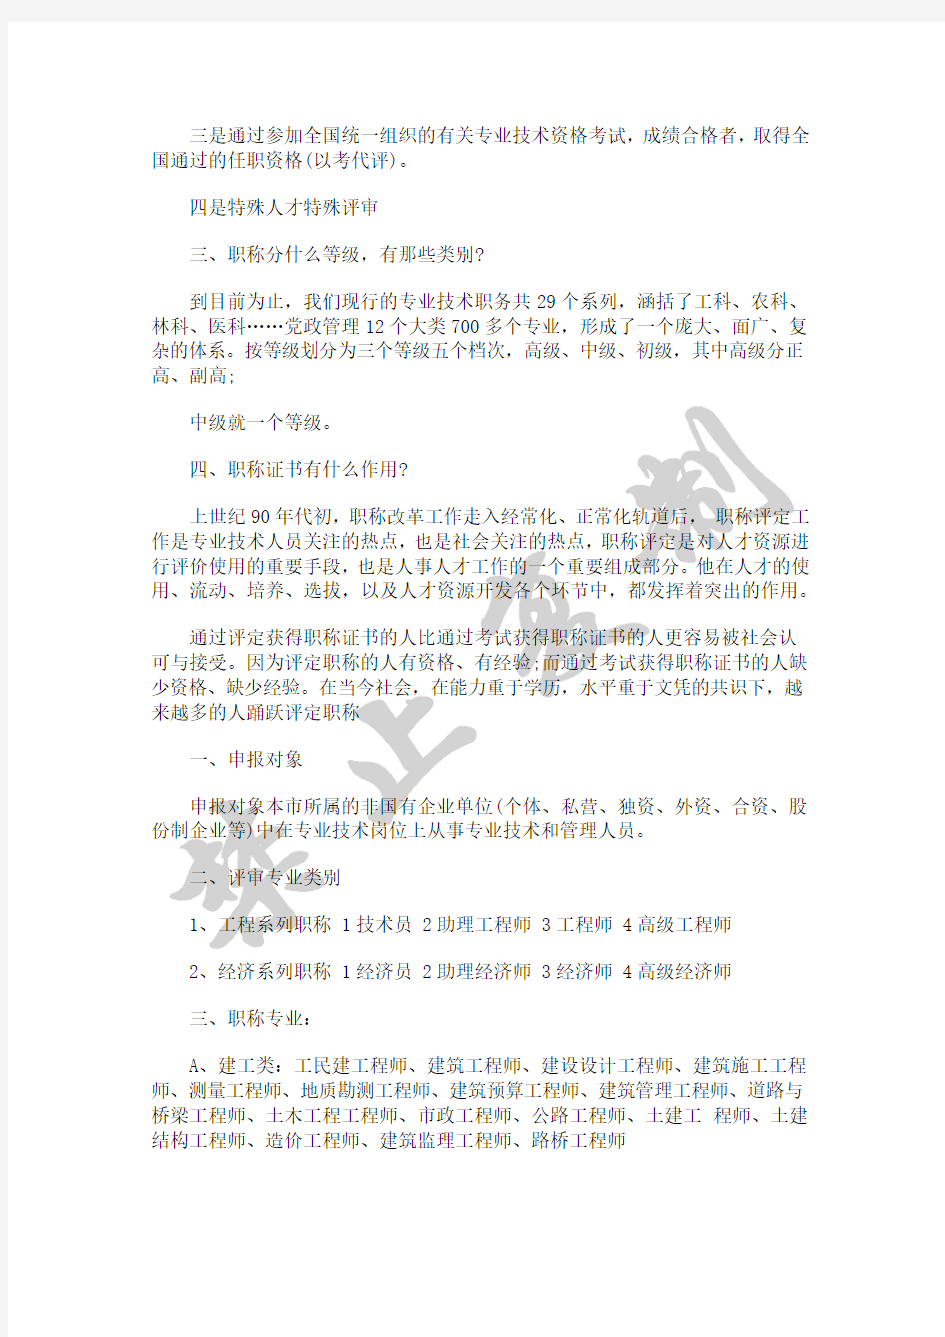 2018年江苏省高级工程师评审条件、流程